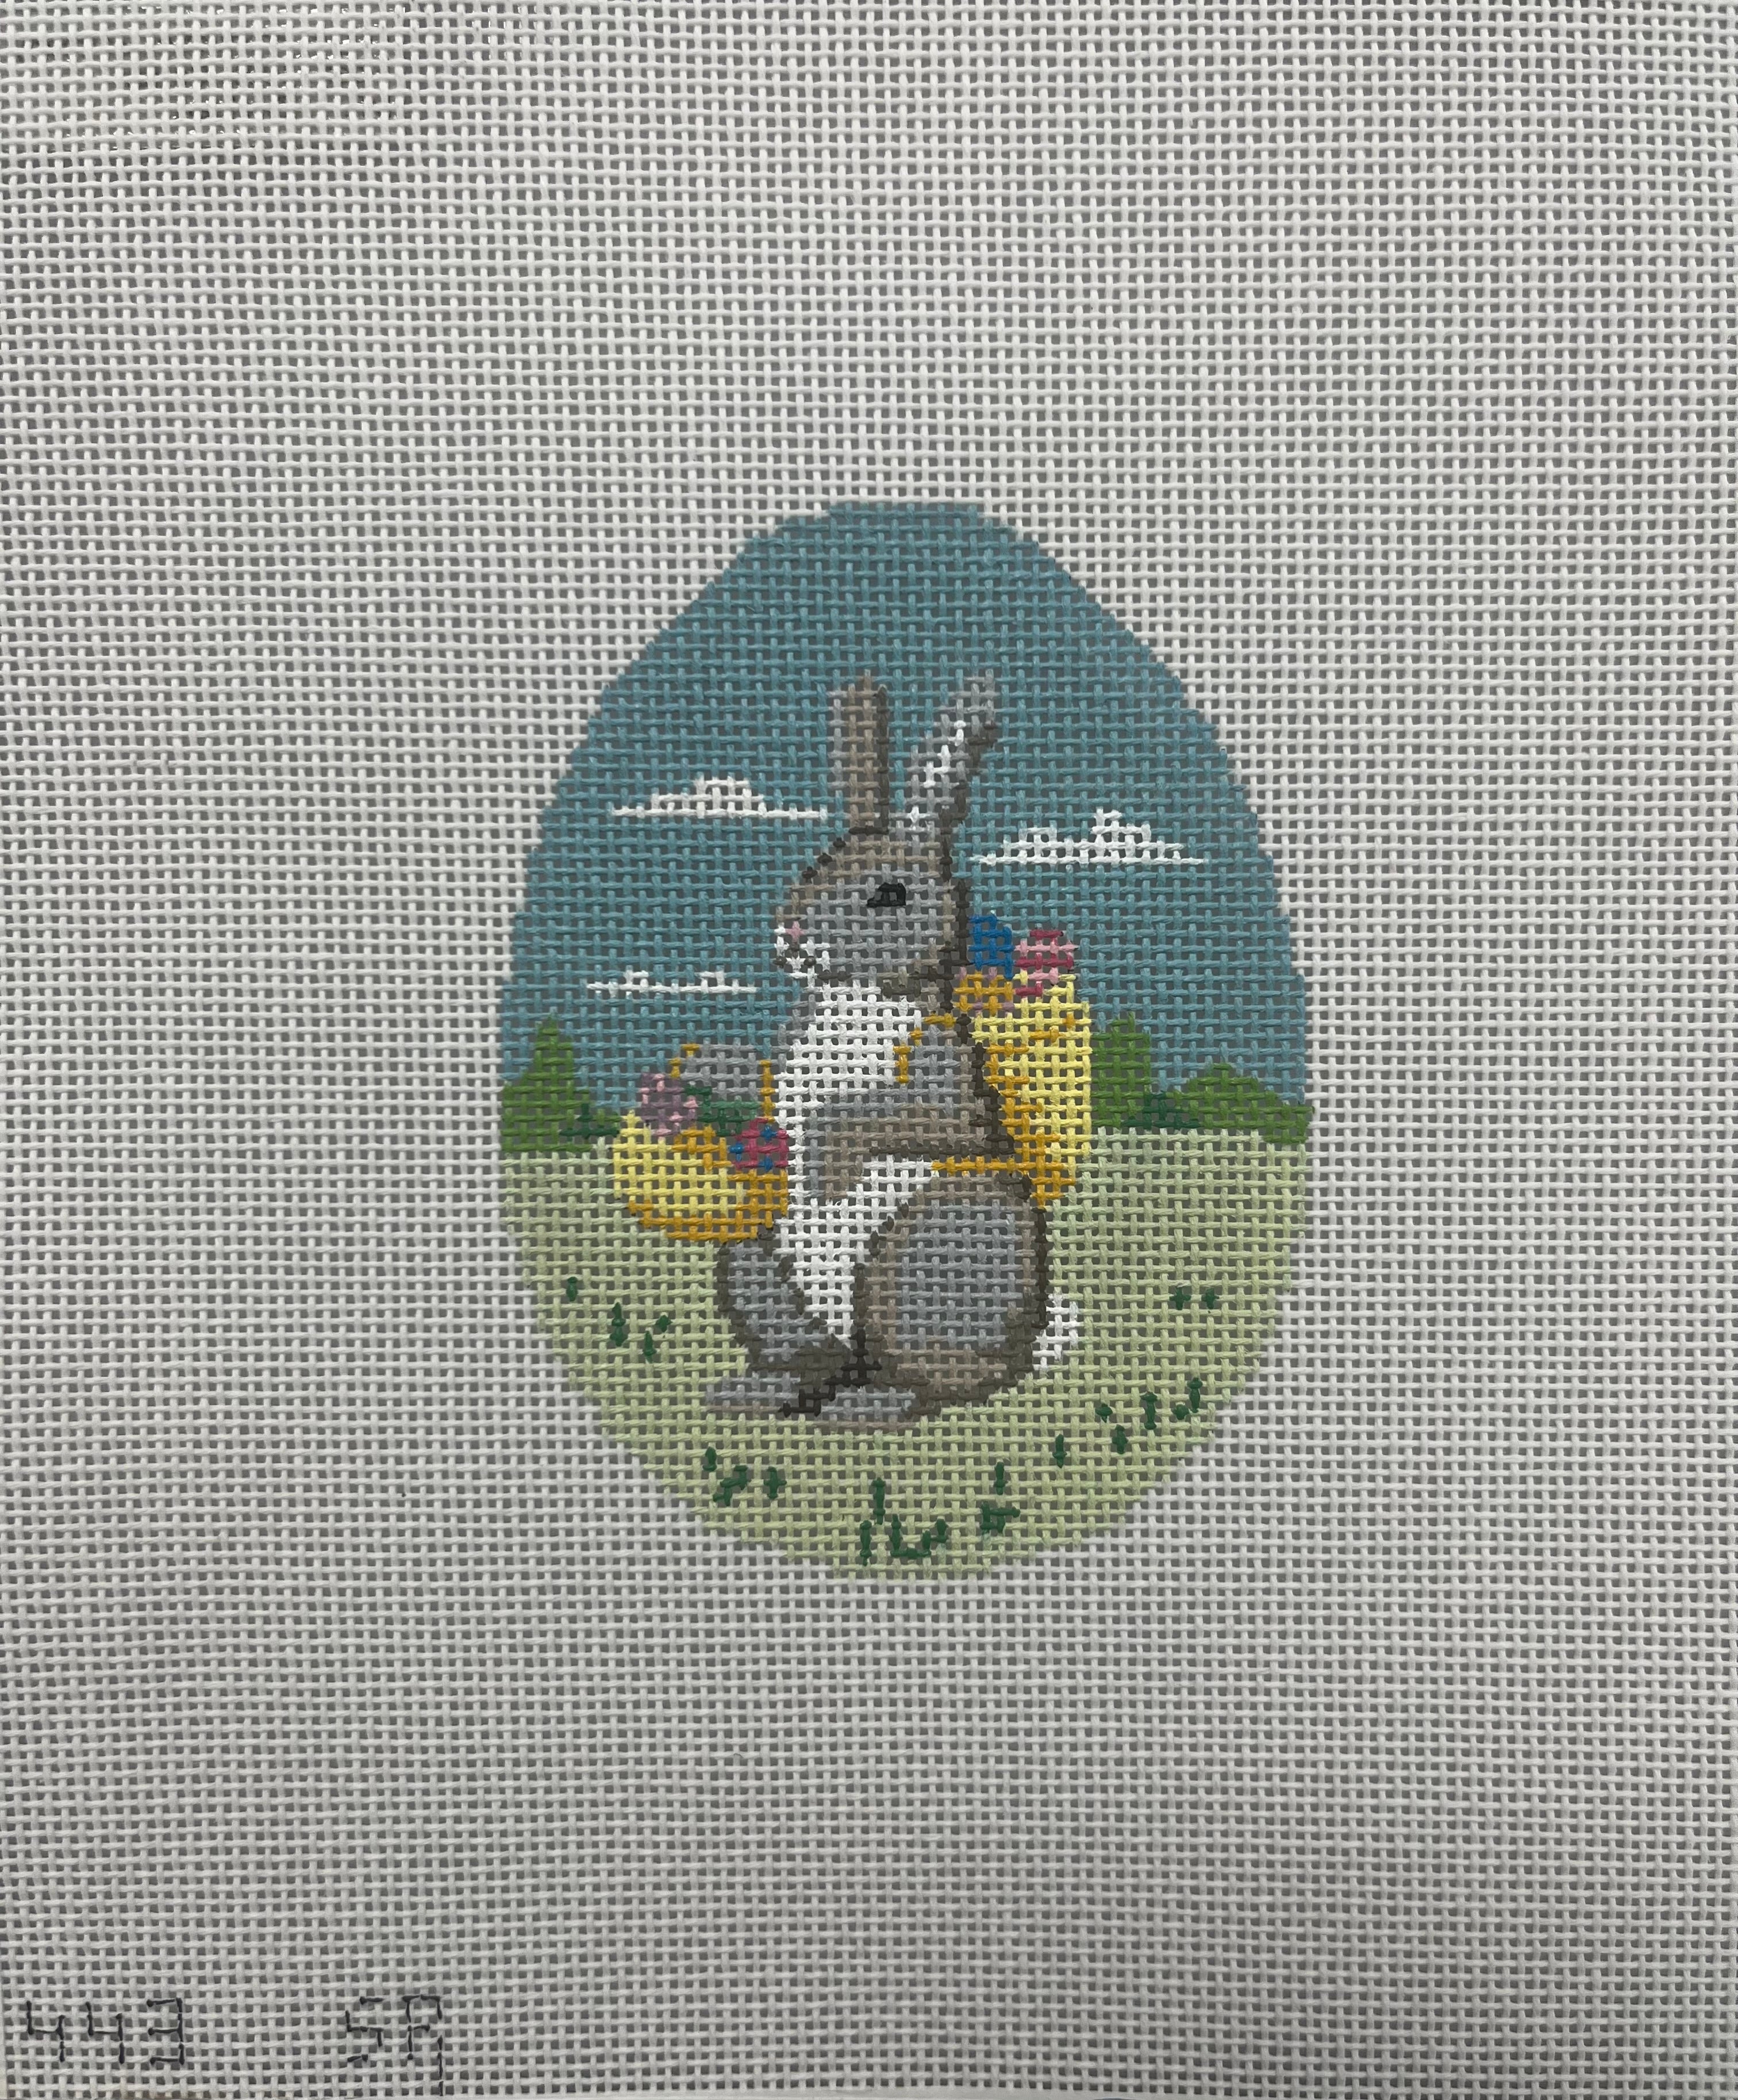 443 - Rabbit In Flowers 4" Egg